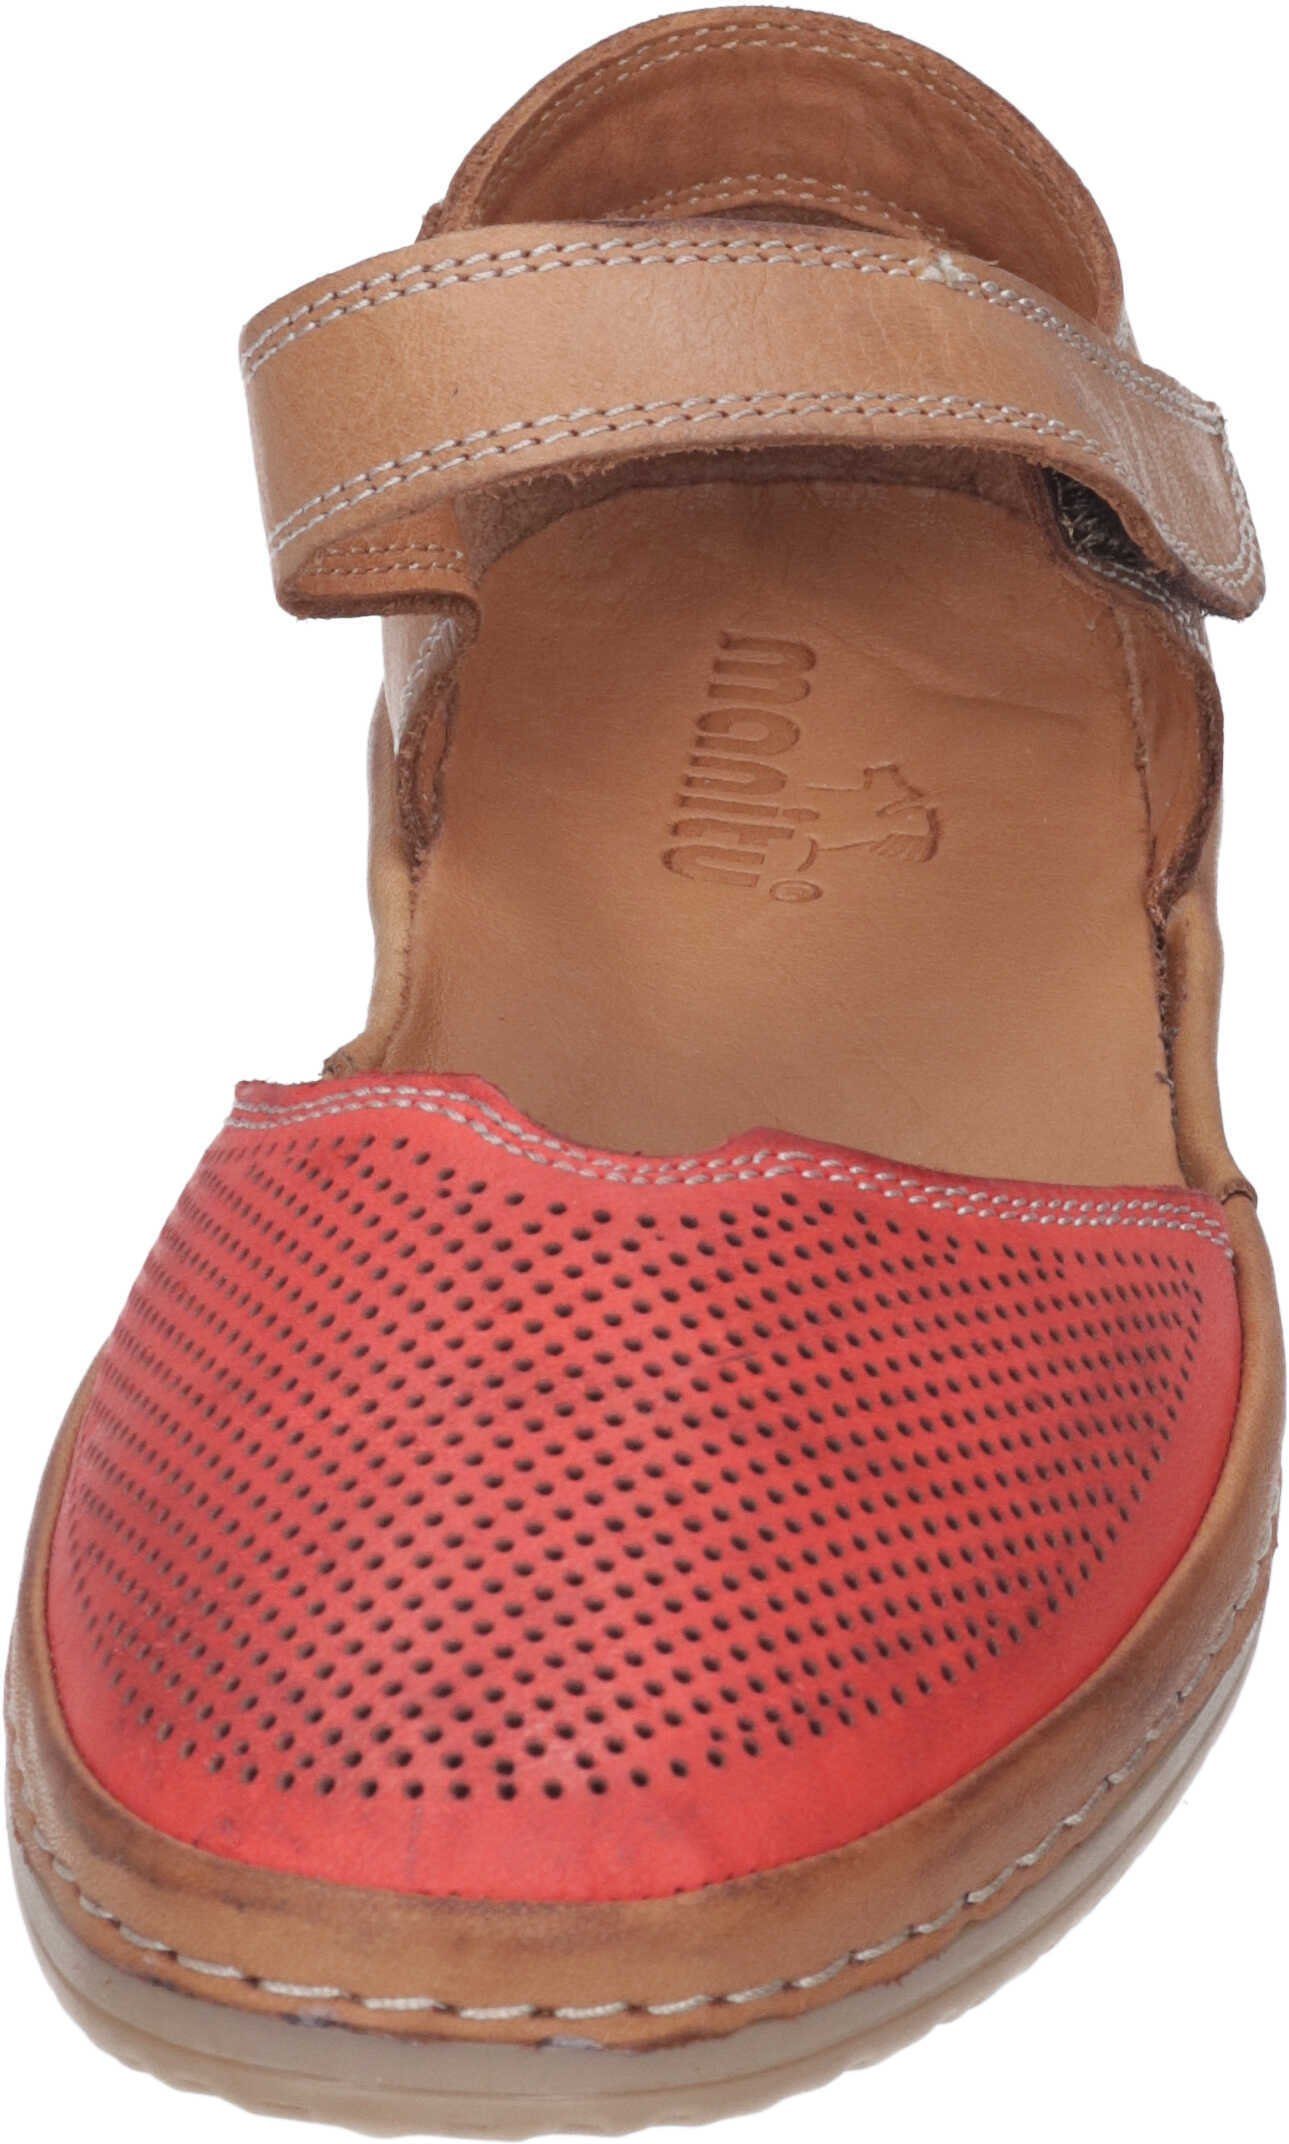 Sandalette Manitu echtem aus Leder rot Sandalen